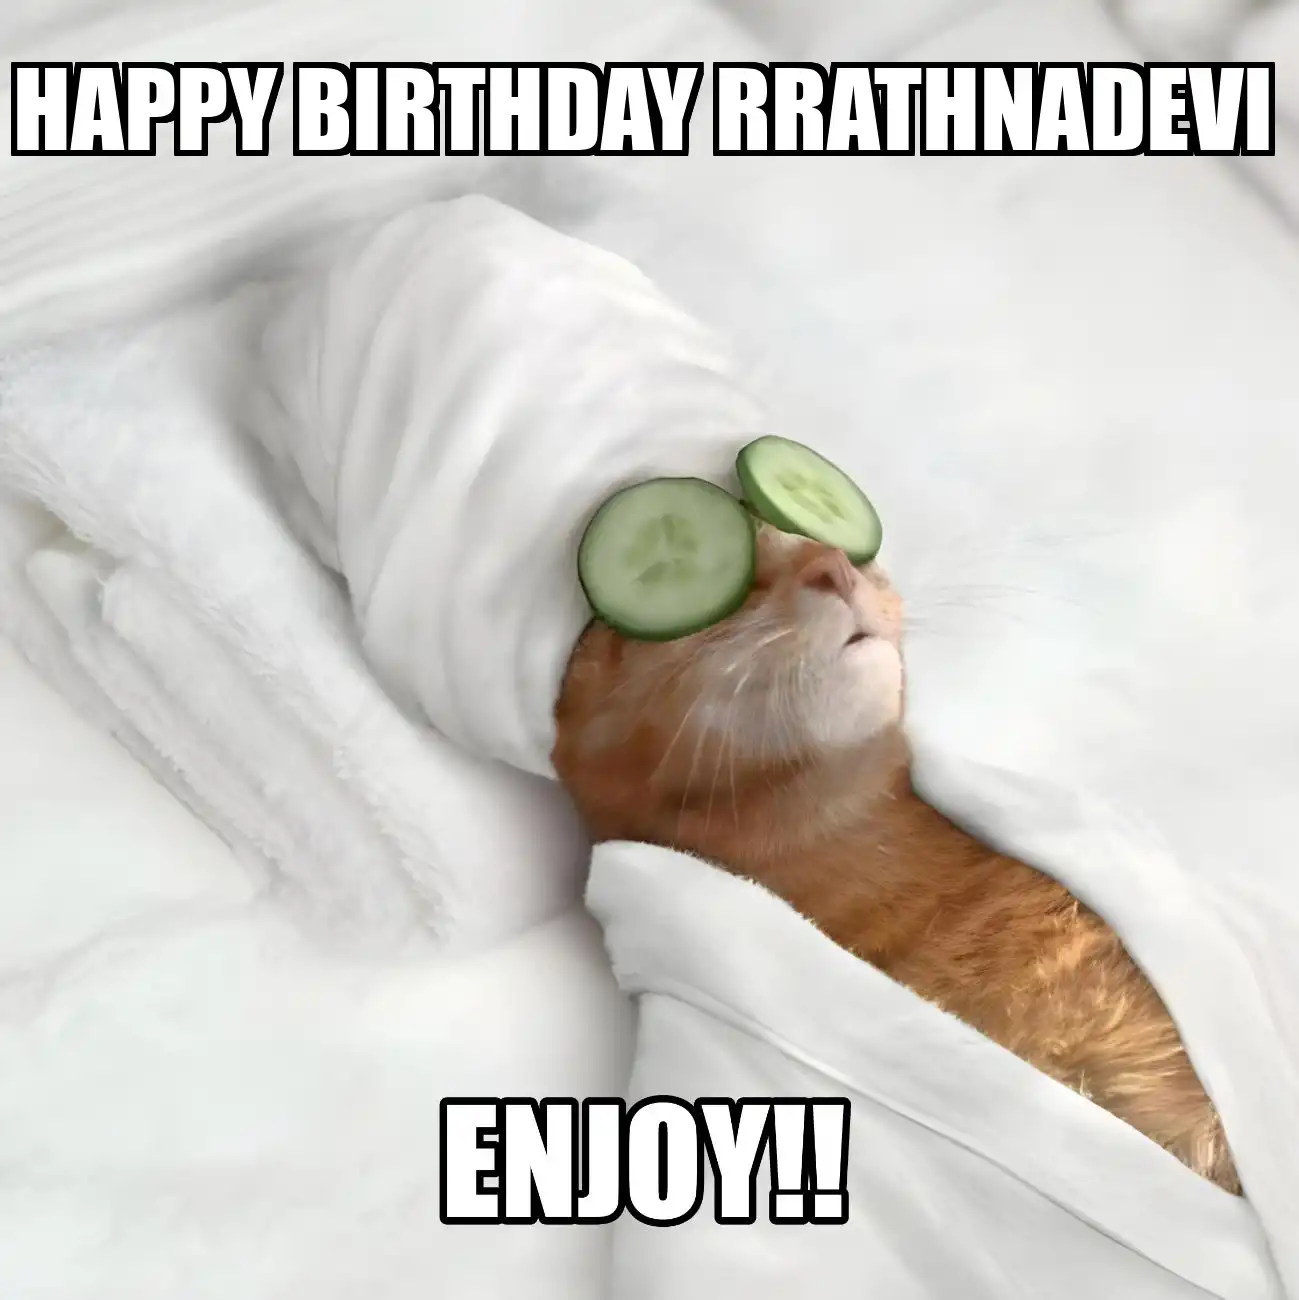 Happy Birthday Rrathnadevi Enjoy Cat Meme